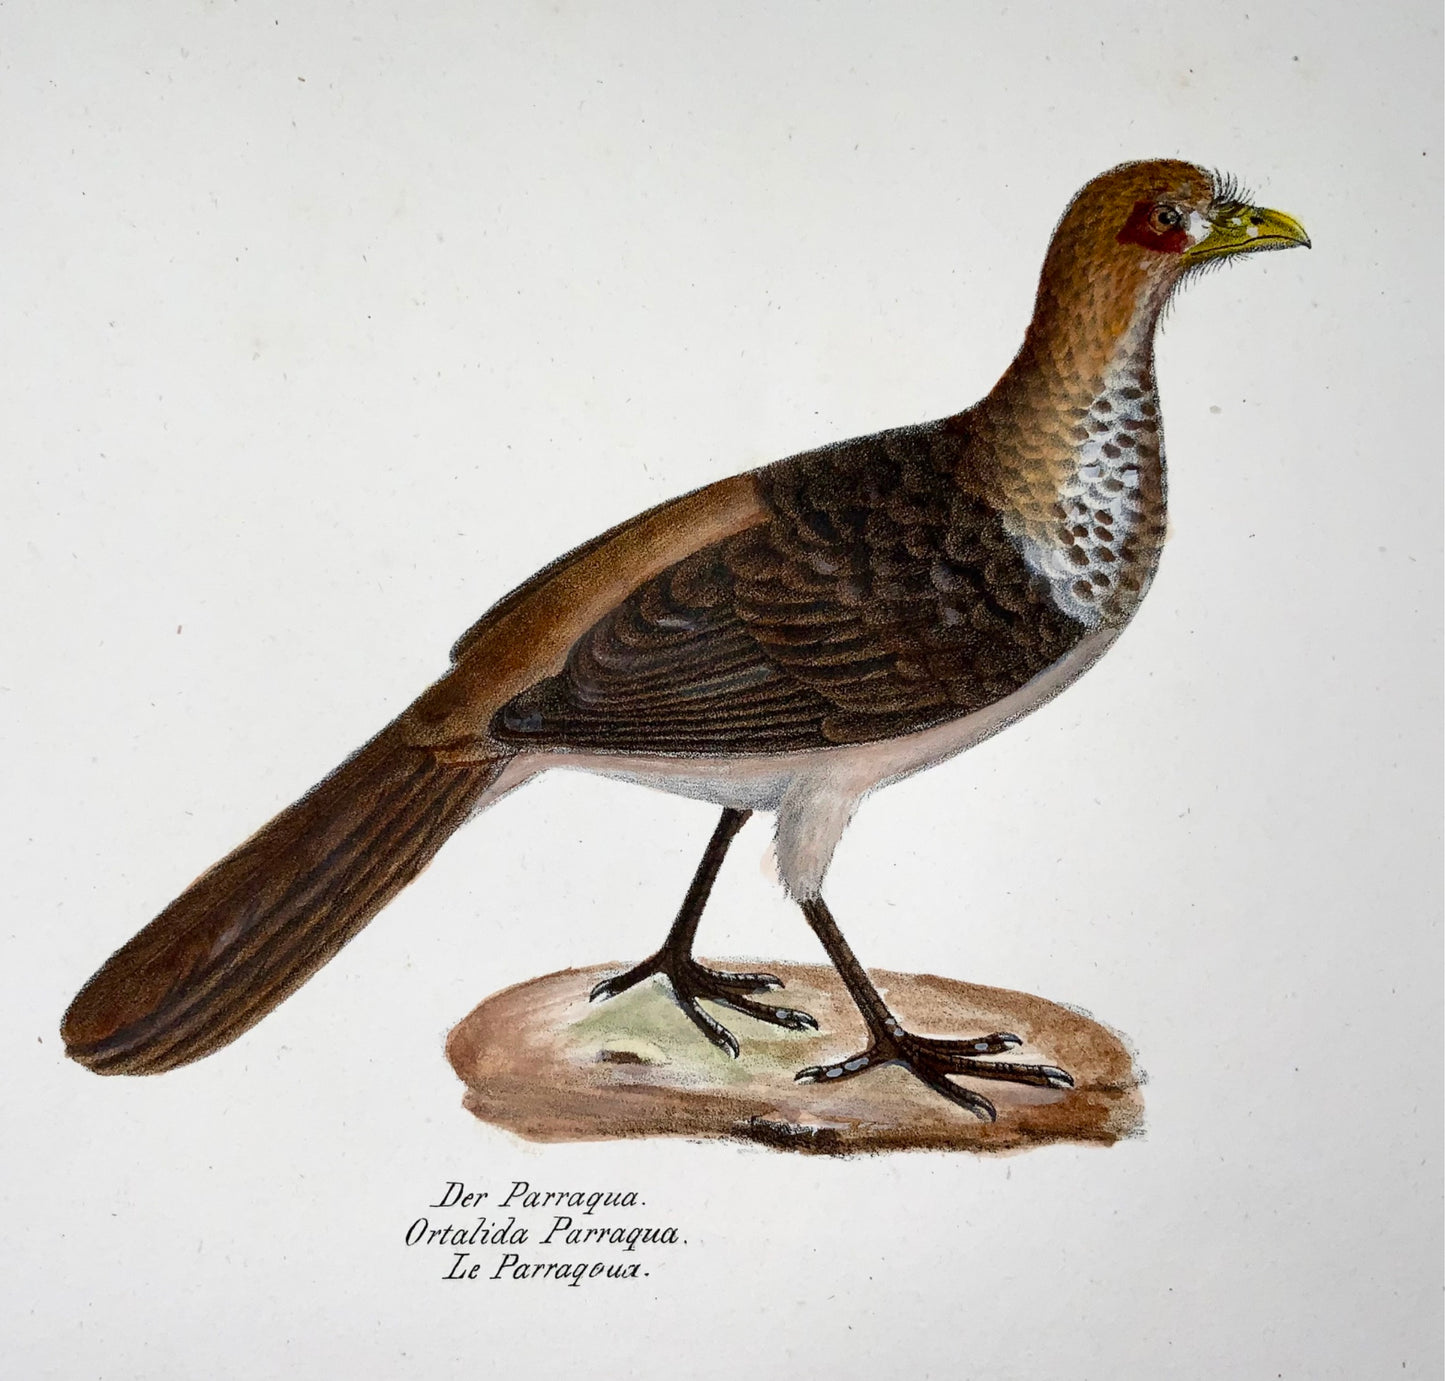 1830 Uccelli curassow, ornitologia, Brodtmann, litografia, folio